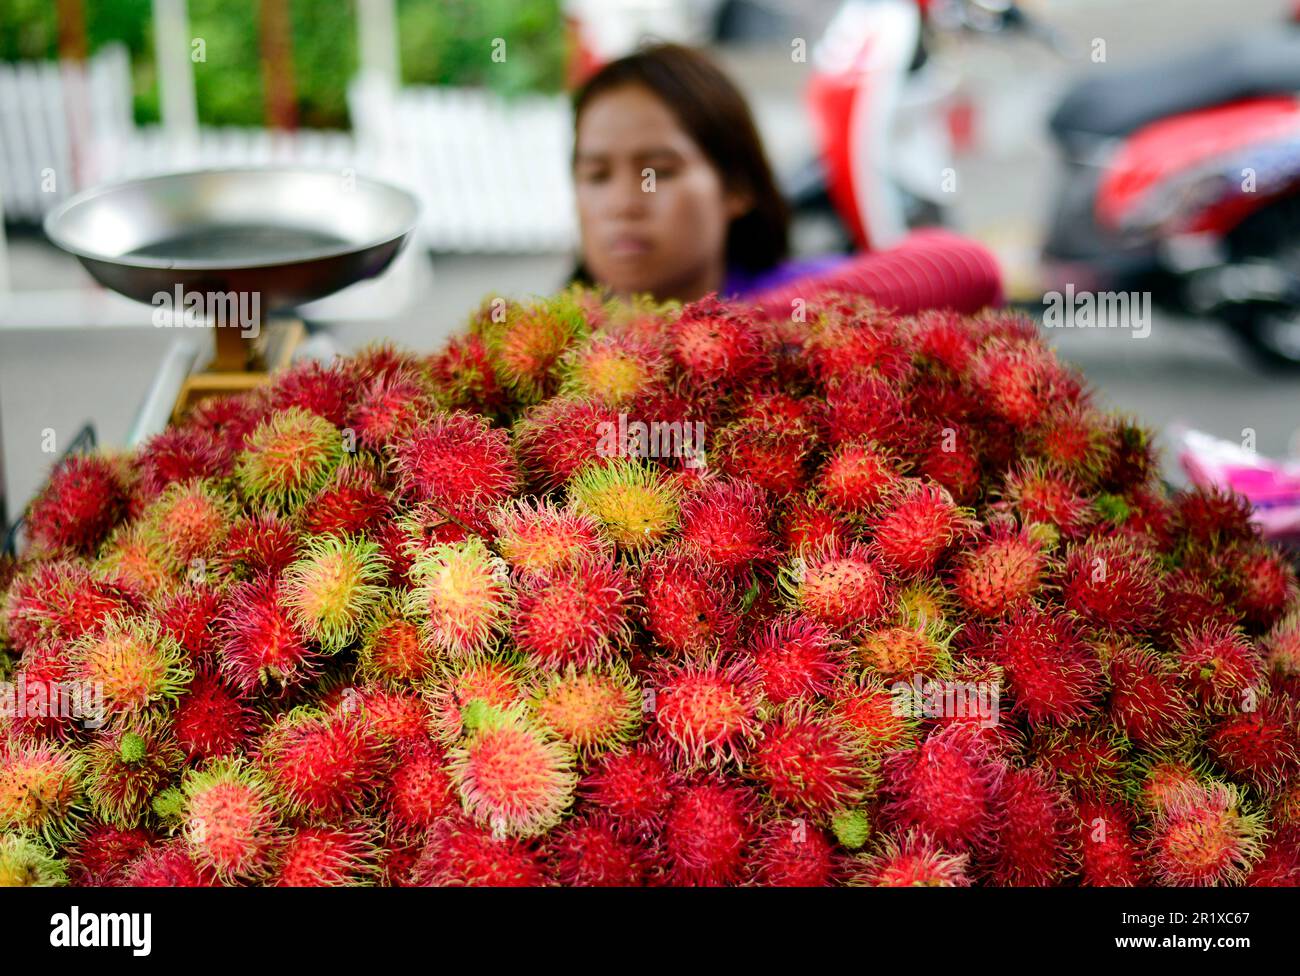 A Rambutan vendor in Bangkok, Thailand. Stock Photo